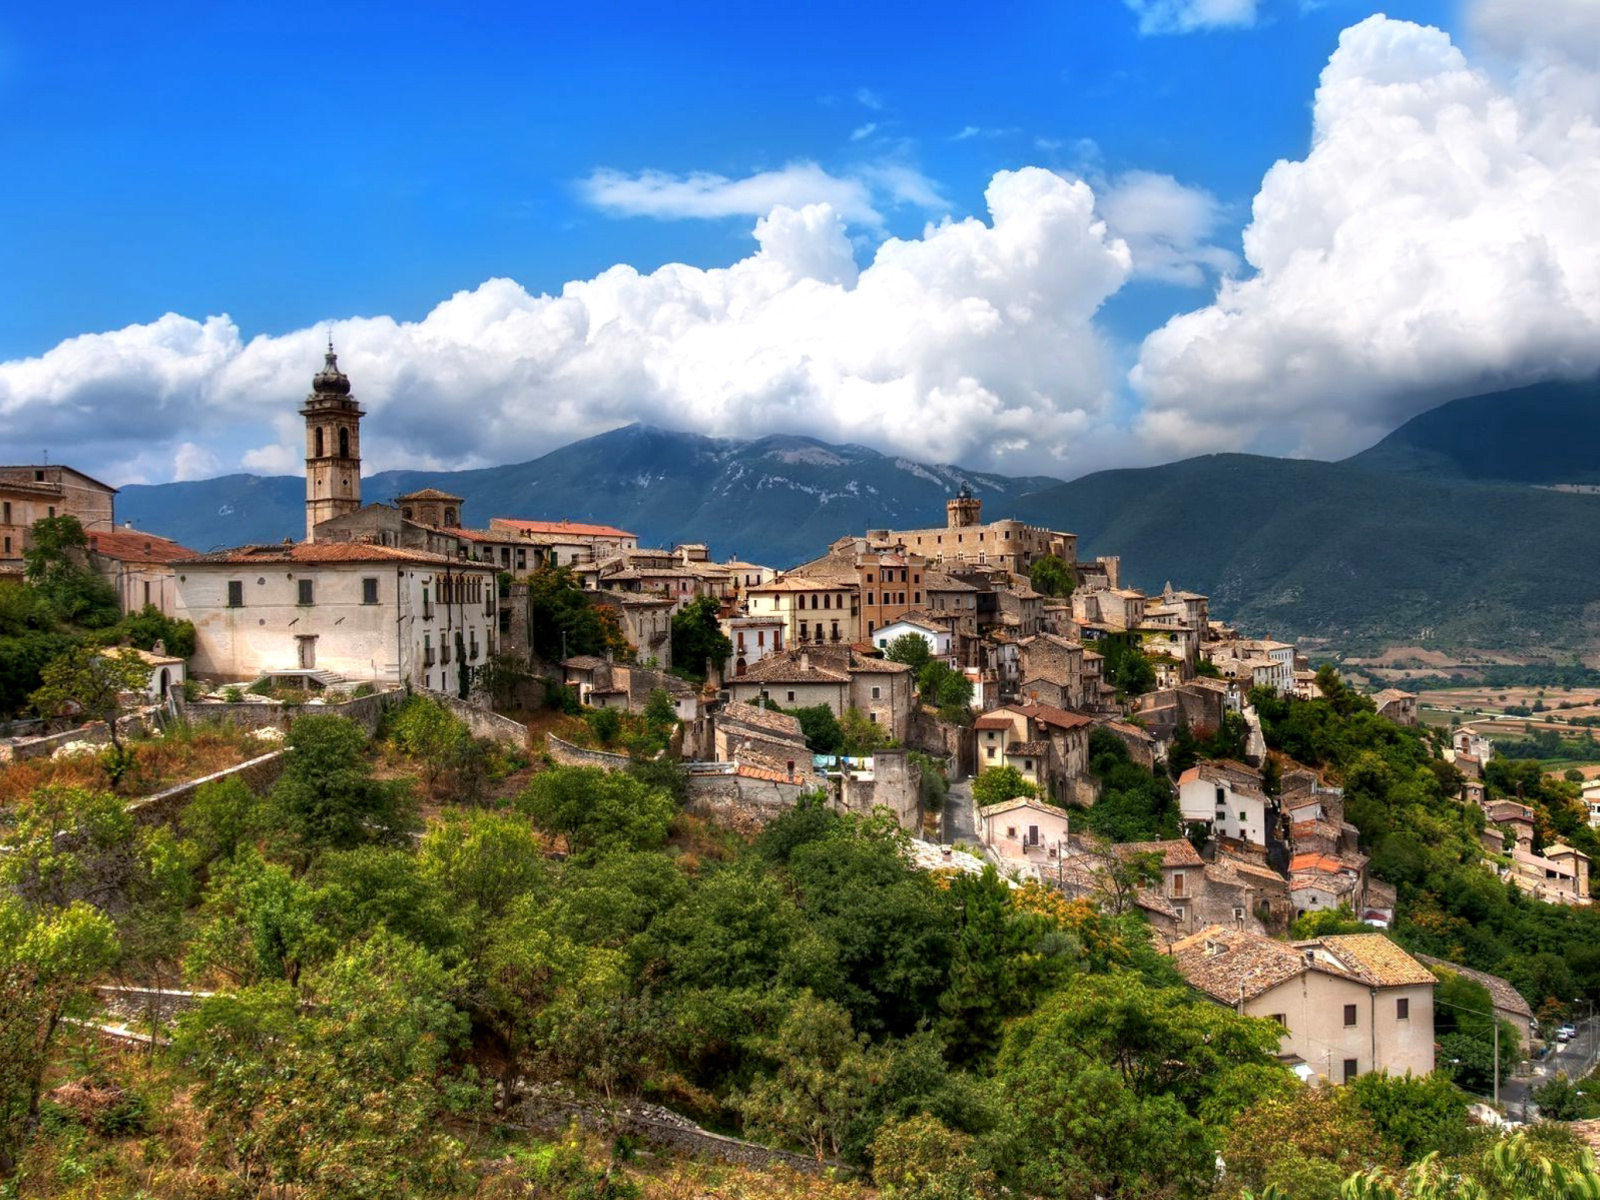 Capestrano Comune in Abruzzo screenshot #1 1600x1200